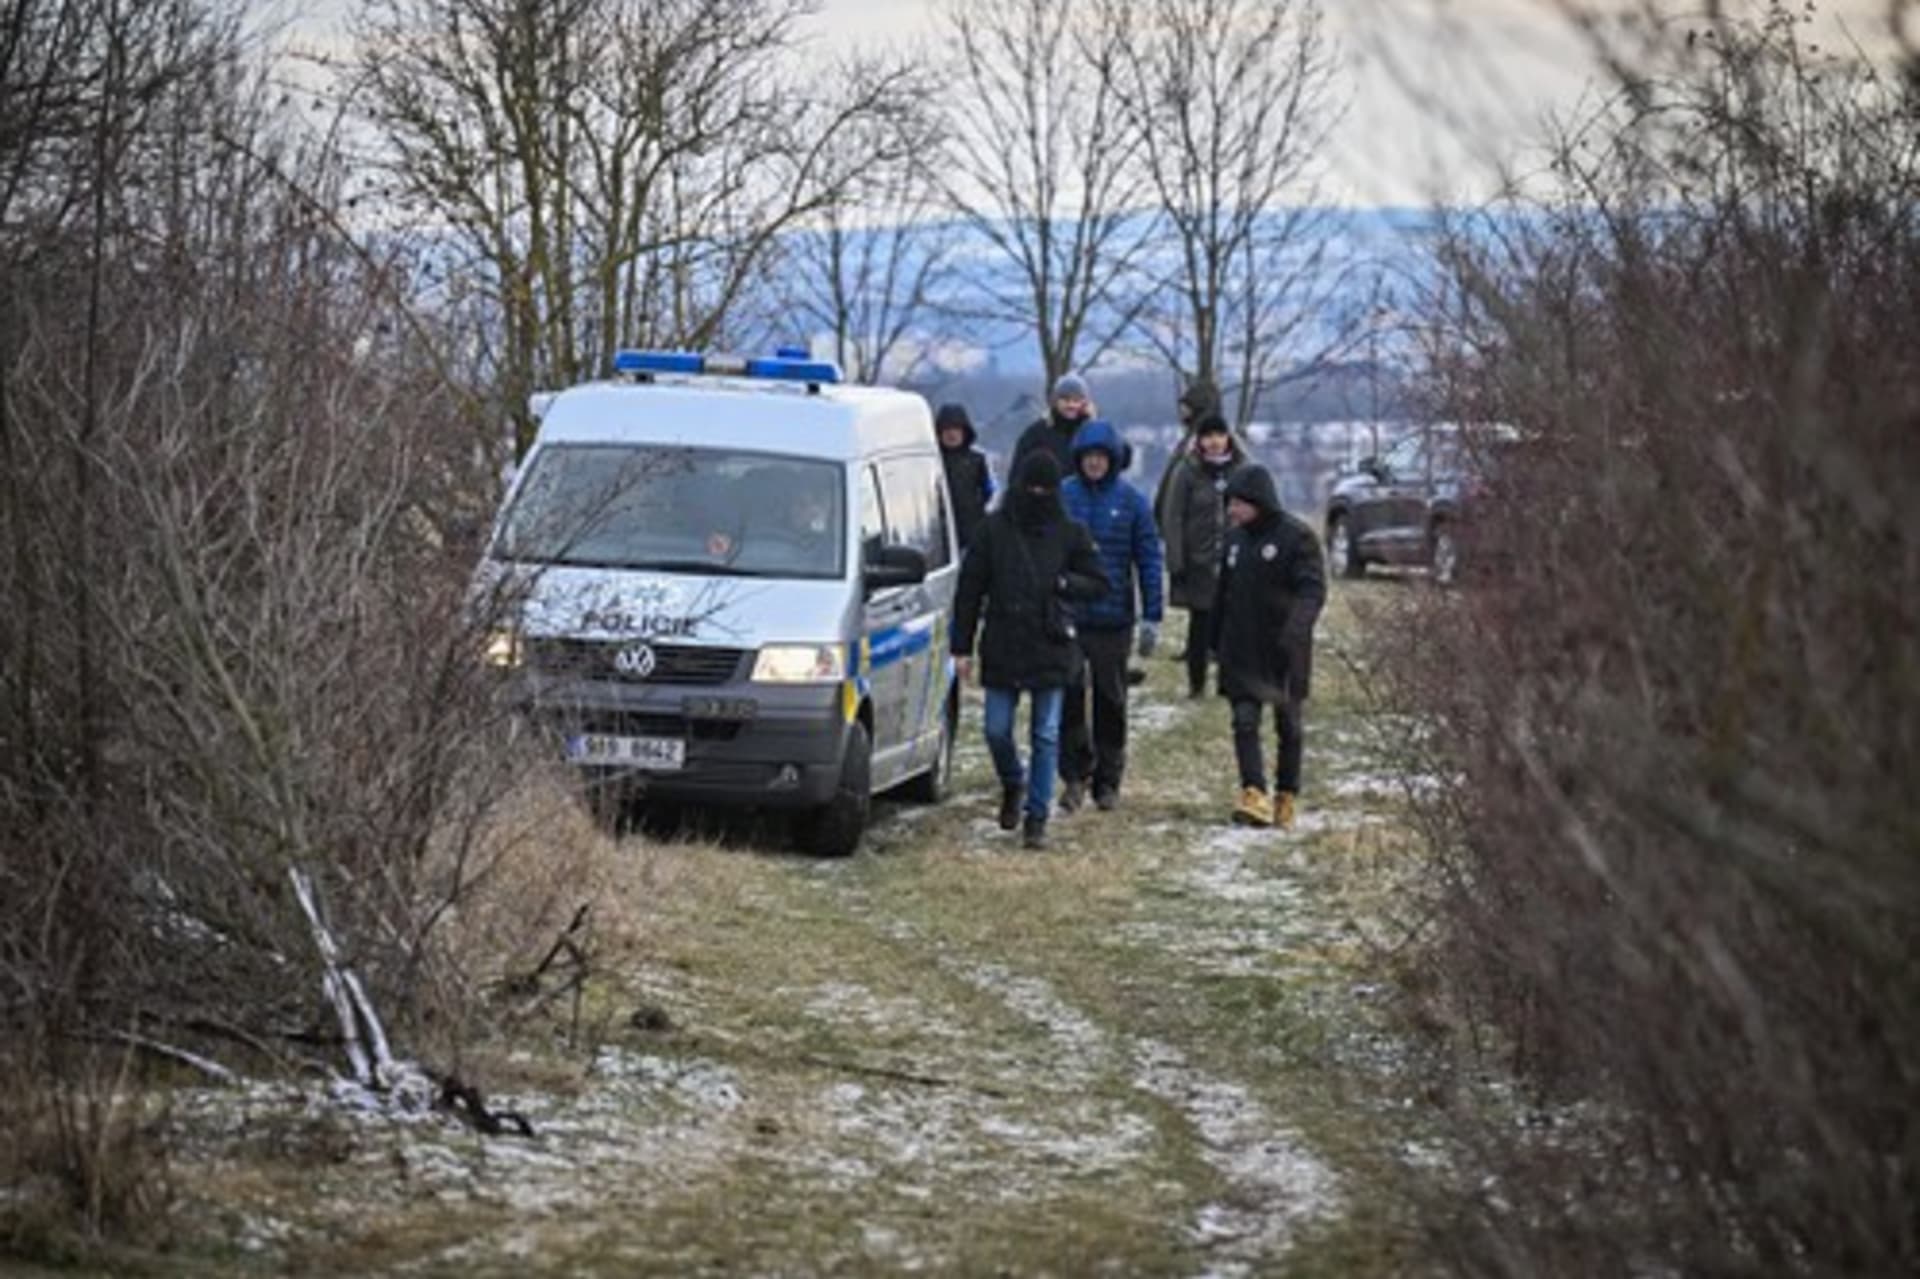 Policisté v neděli pokračovali v oblasti kolem stolové hory Vidoule v Praze 5 v pátrání po pohřešované osobě. Kolem 15. hodiny oznámili nález kosterních pozůstatků.